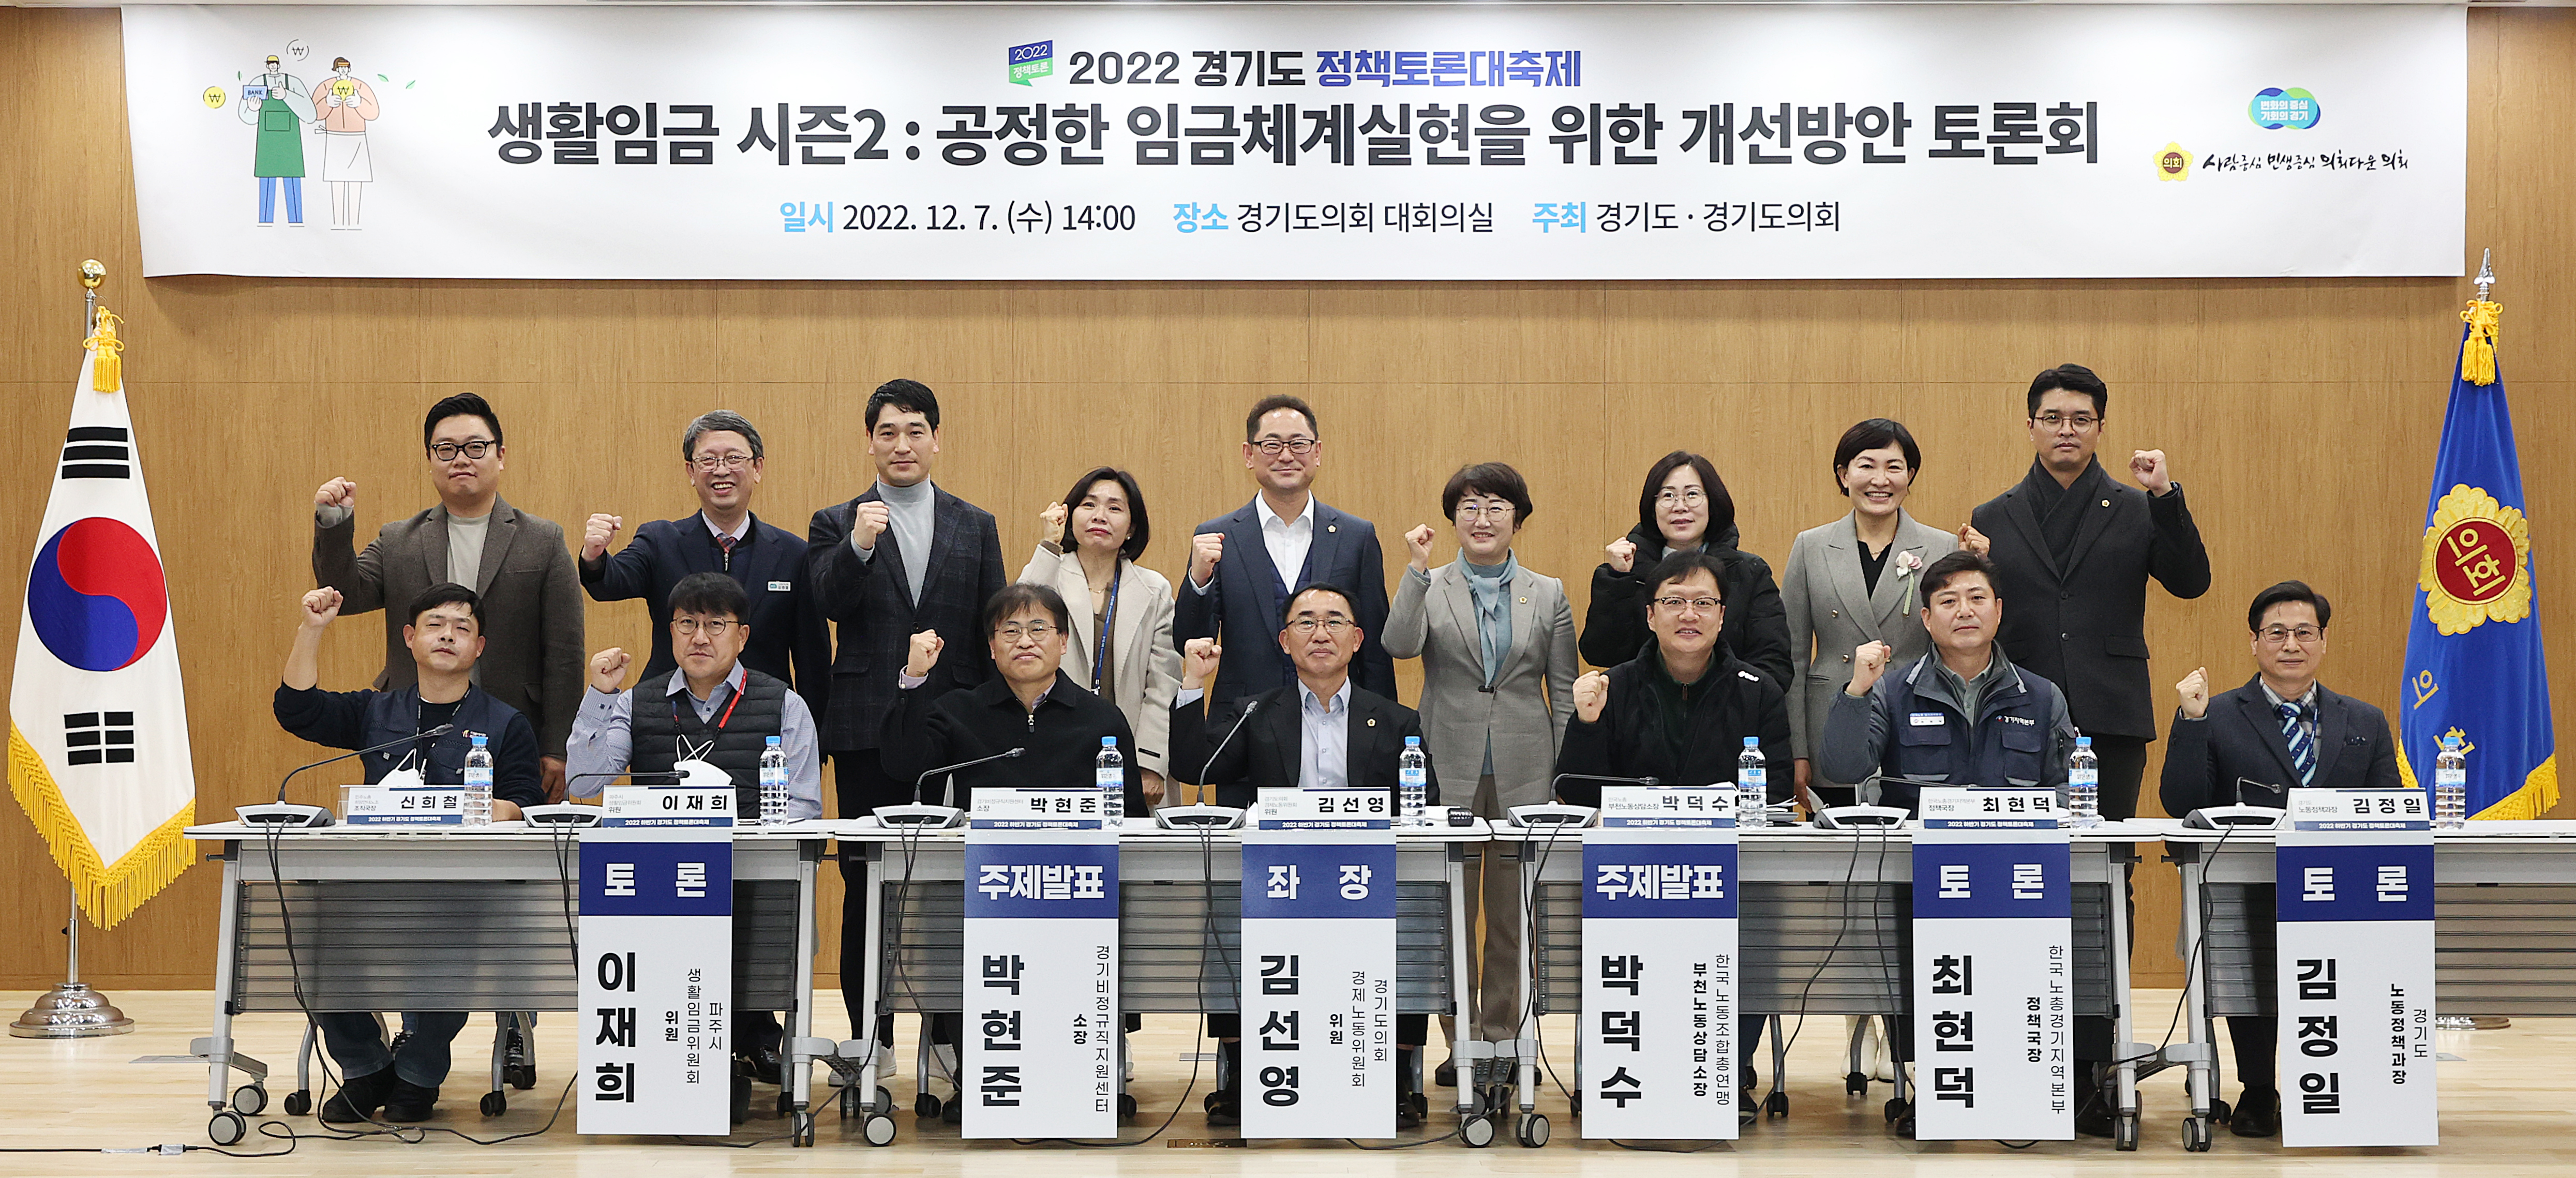 [경기도의회 김선영 의원] “생활임금 시즌2: 공정한 임금체계실현을 위한 개선방안” 토론회 개최